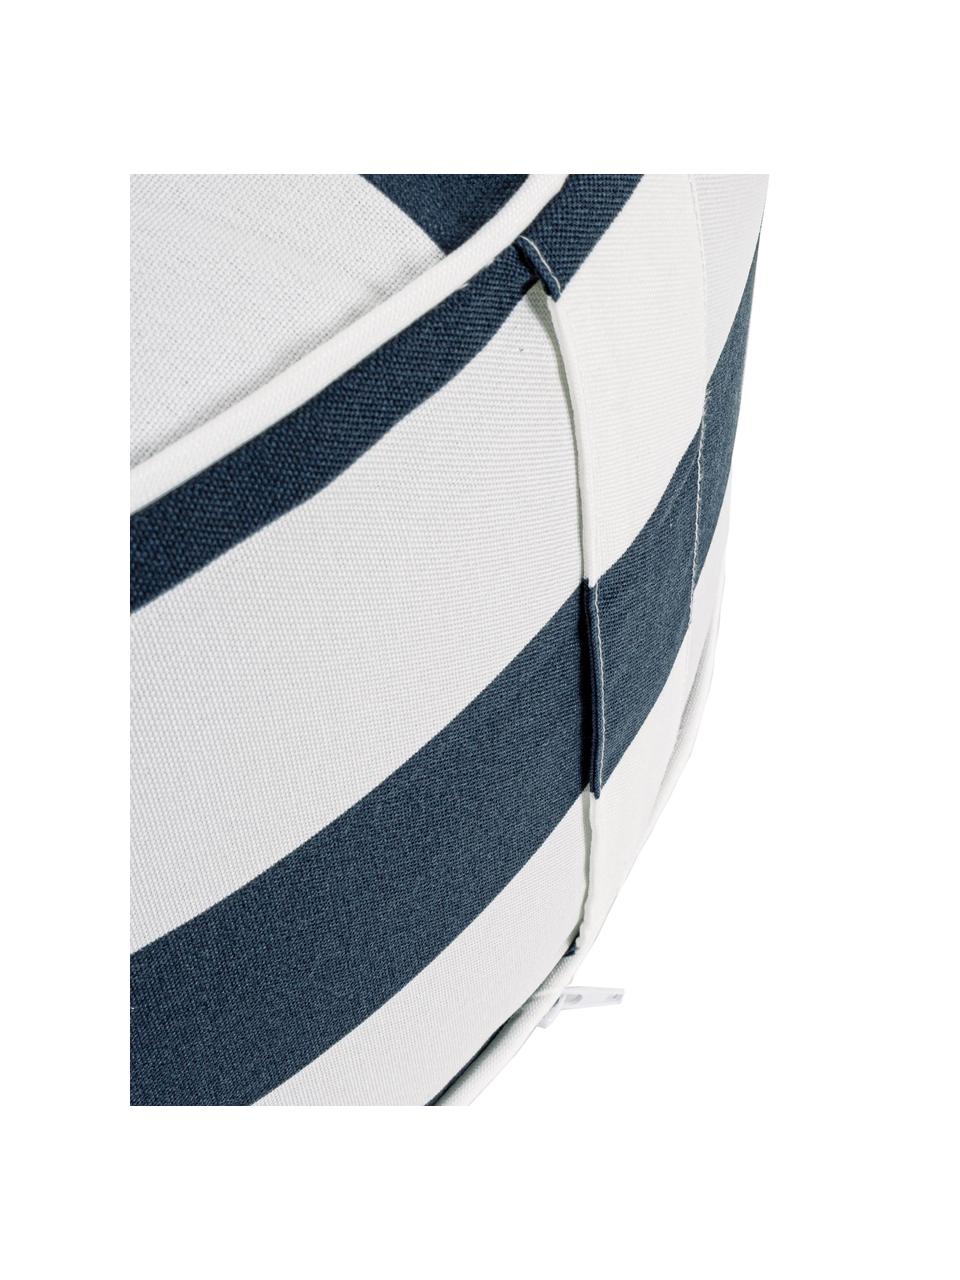 Nadmuchiwany puf zewnętrzny Stripes, Tapicerka: 100% tkanina poliestrowa , Biały, niebieski, Ø 53 x W 23 cm